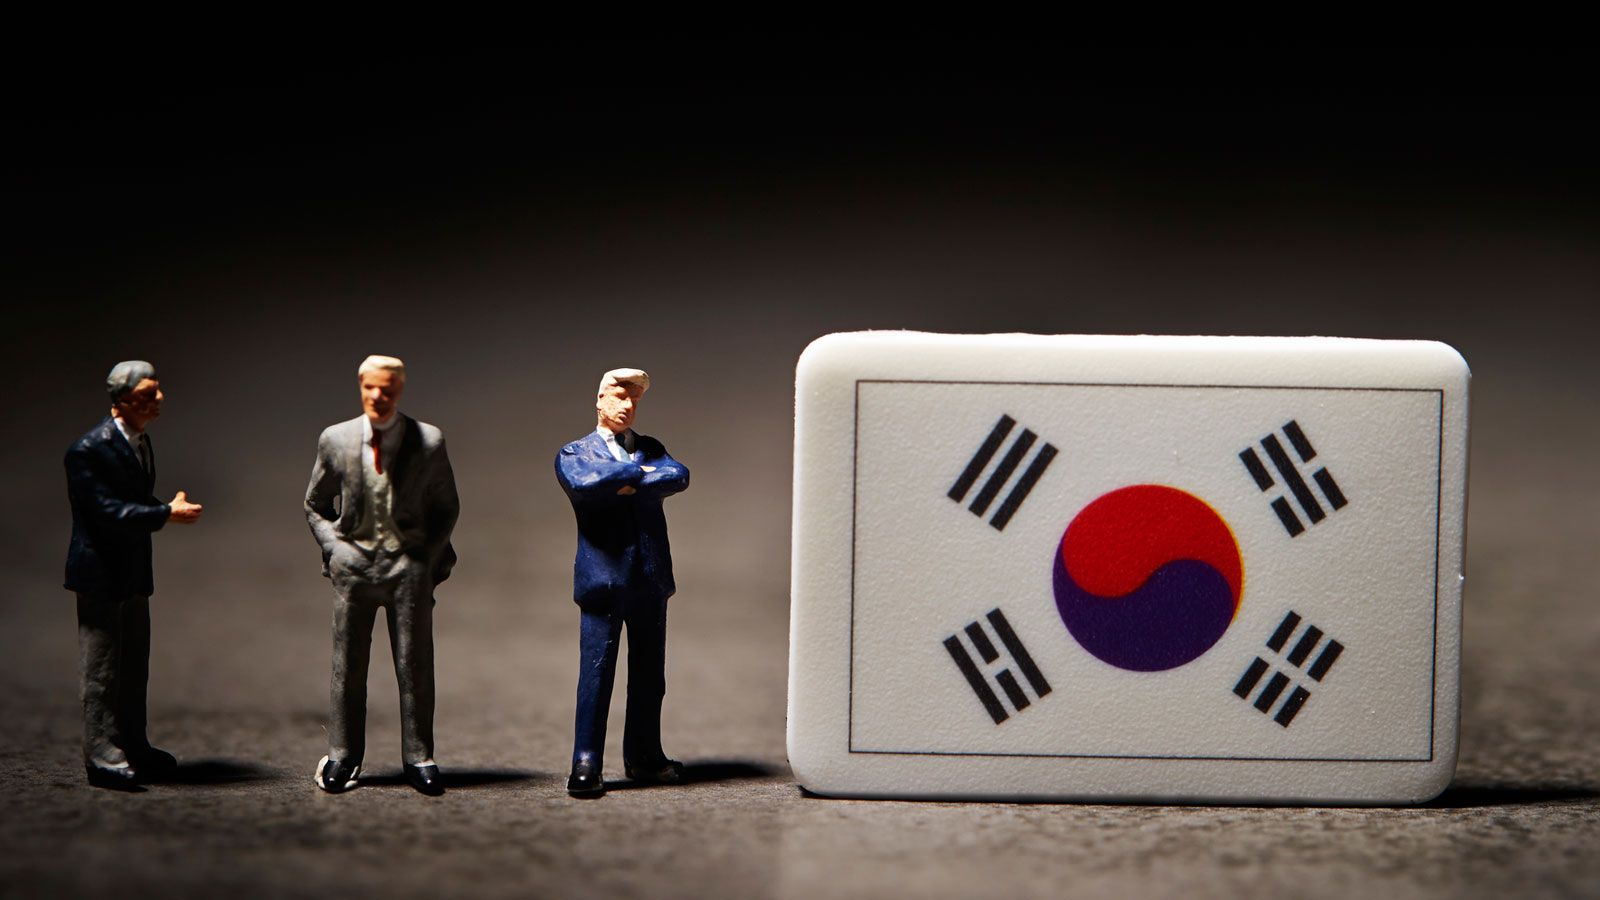 韓国｢徴用工勝訴｣が日本に与える巨大衝撃 戦後体制そのものを揺るがすパンドラの箱だ | 災害･事件･裁判 | 東洋経済オンライン